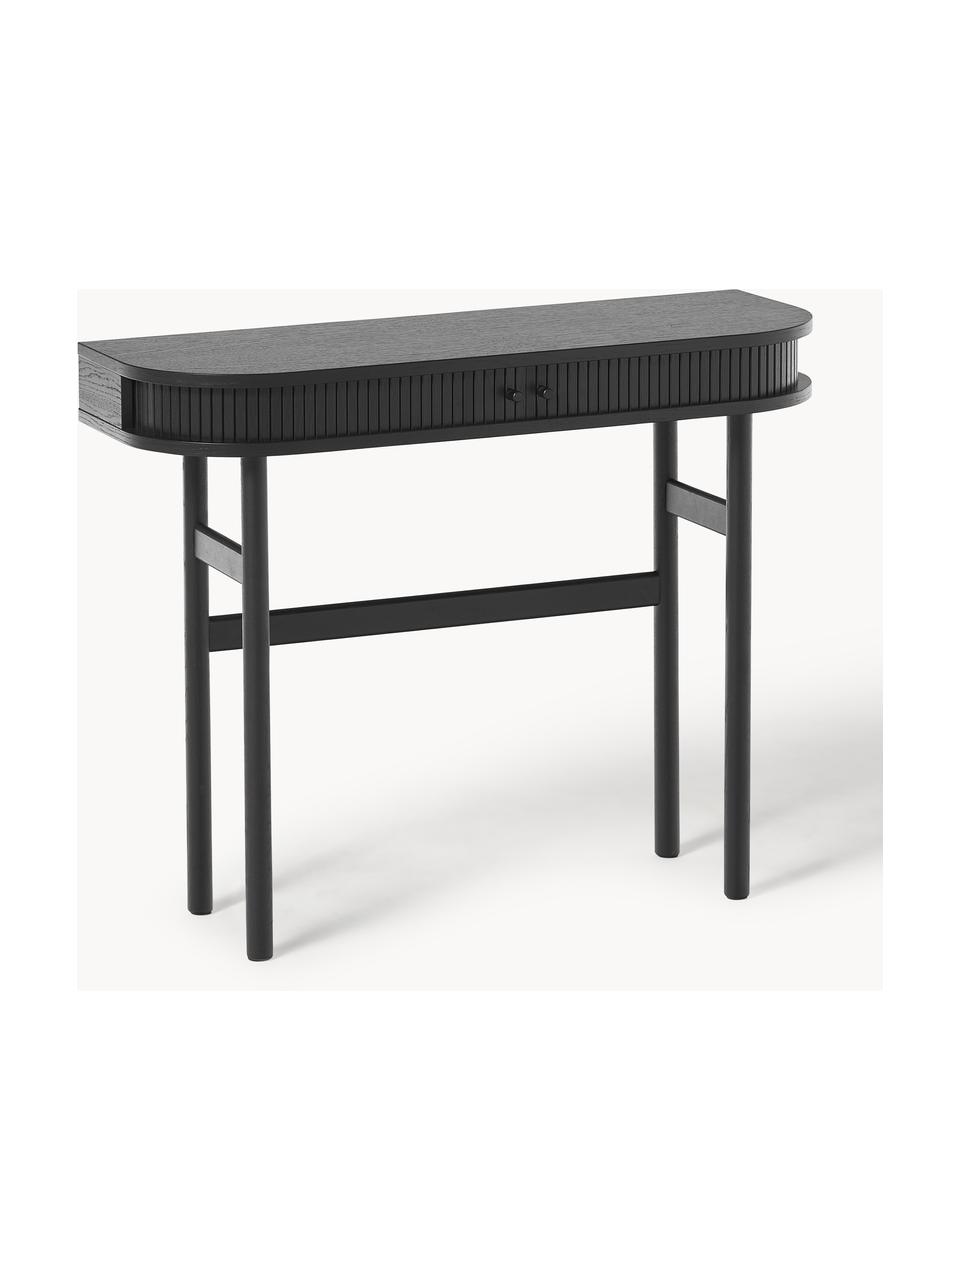 Konzolový stolík s drážkovanou prednou stranou Calary, Dubové drevo, čierna lakovaná, Š 100 x V 80 cm